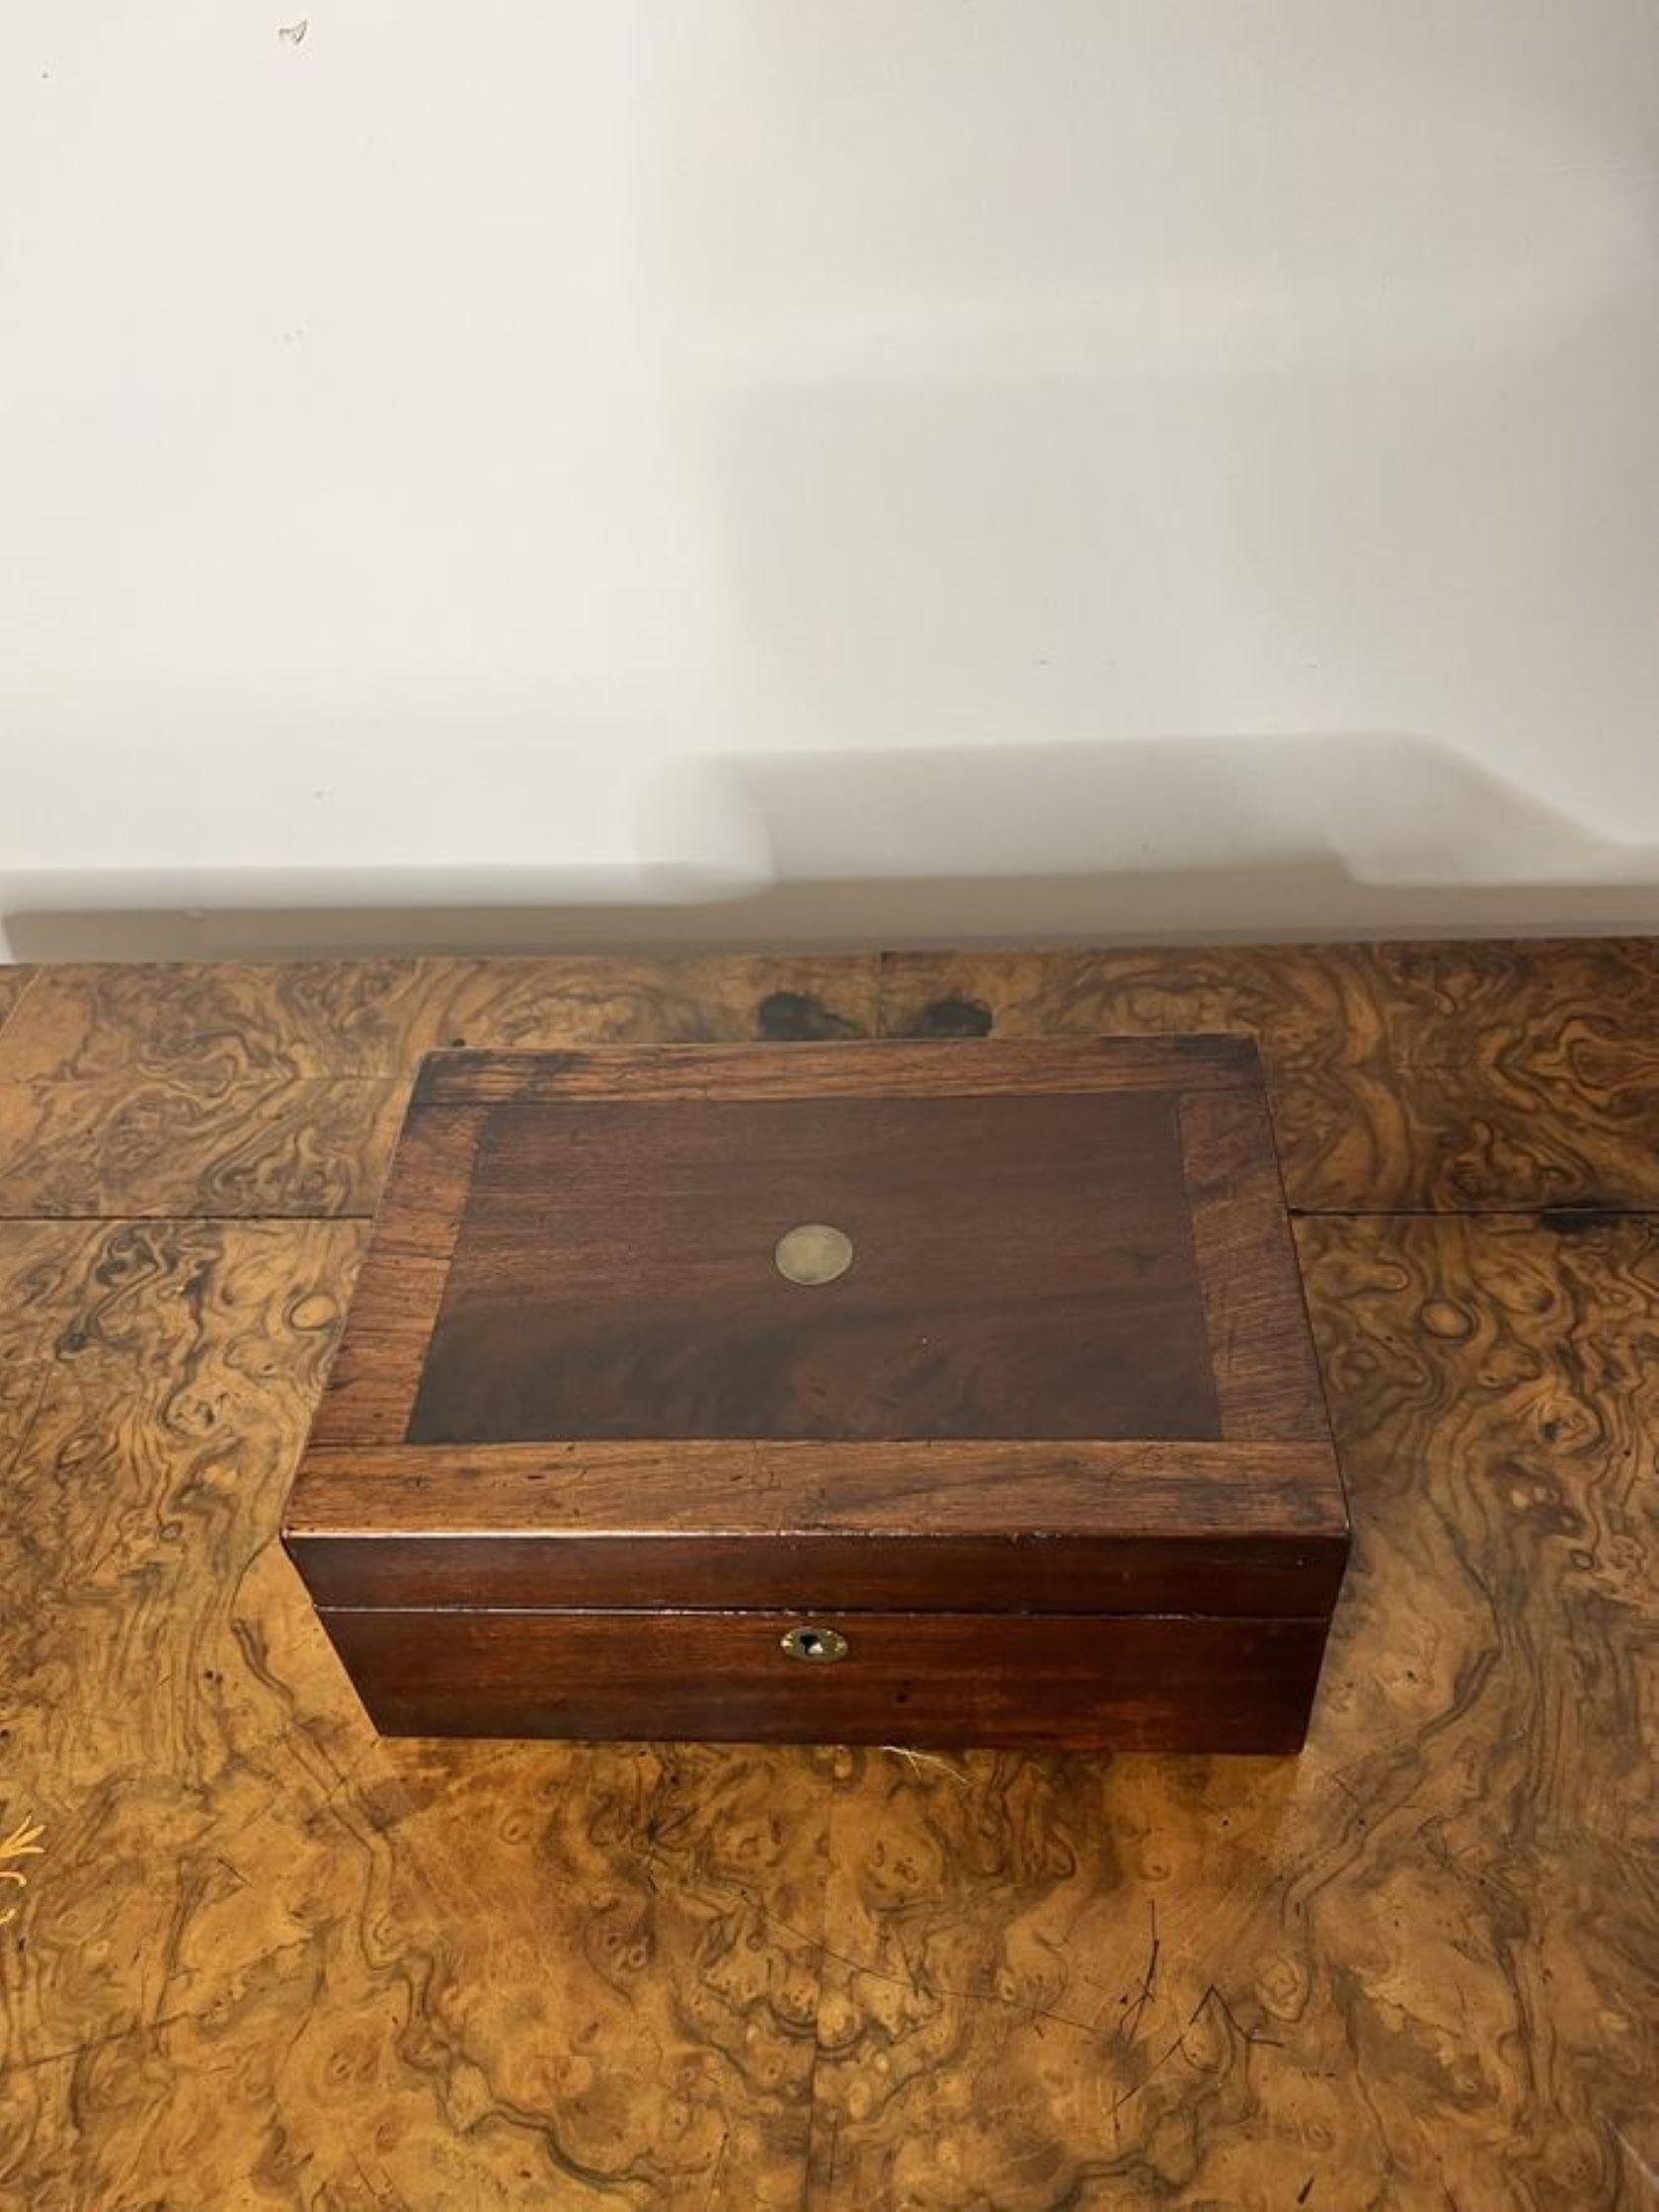 Antike viktorianische Mahagoni-Aufbewahrungsbox mit einer hochwertigen antiken Mahagoni-Aufbewahrungsbox mit rotem Interieur.

D. 1860